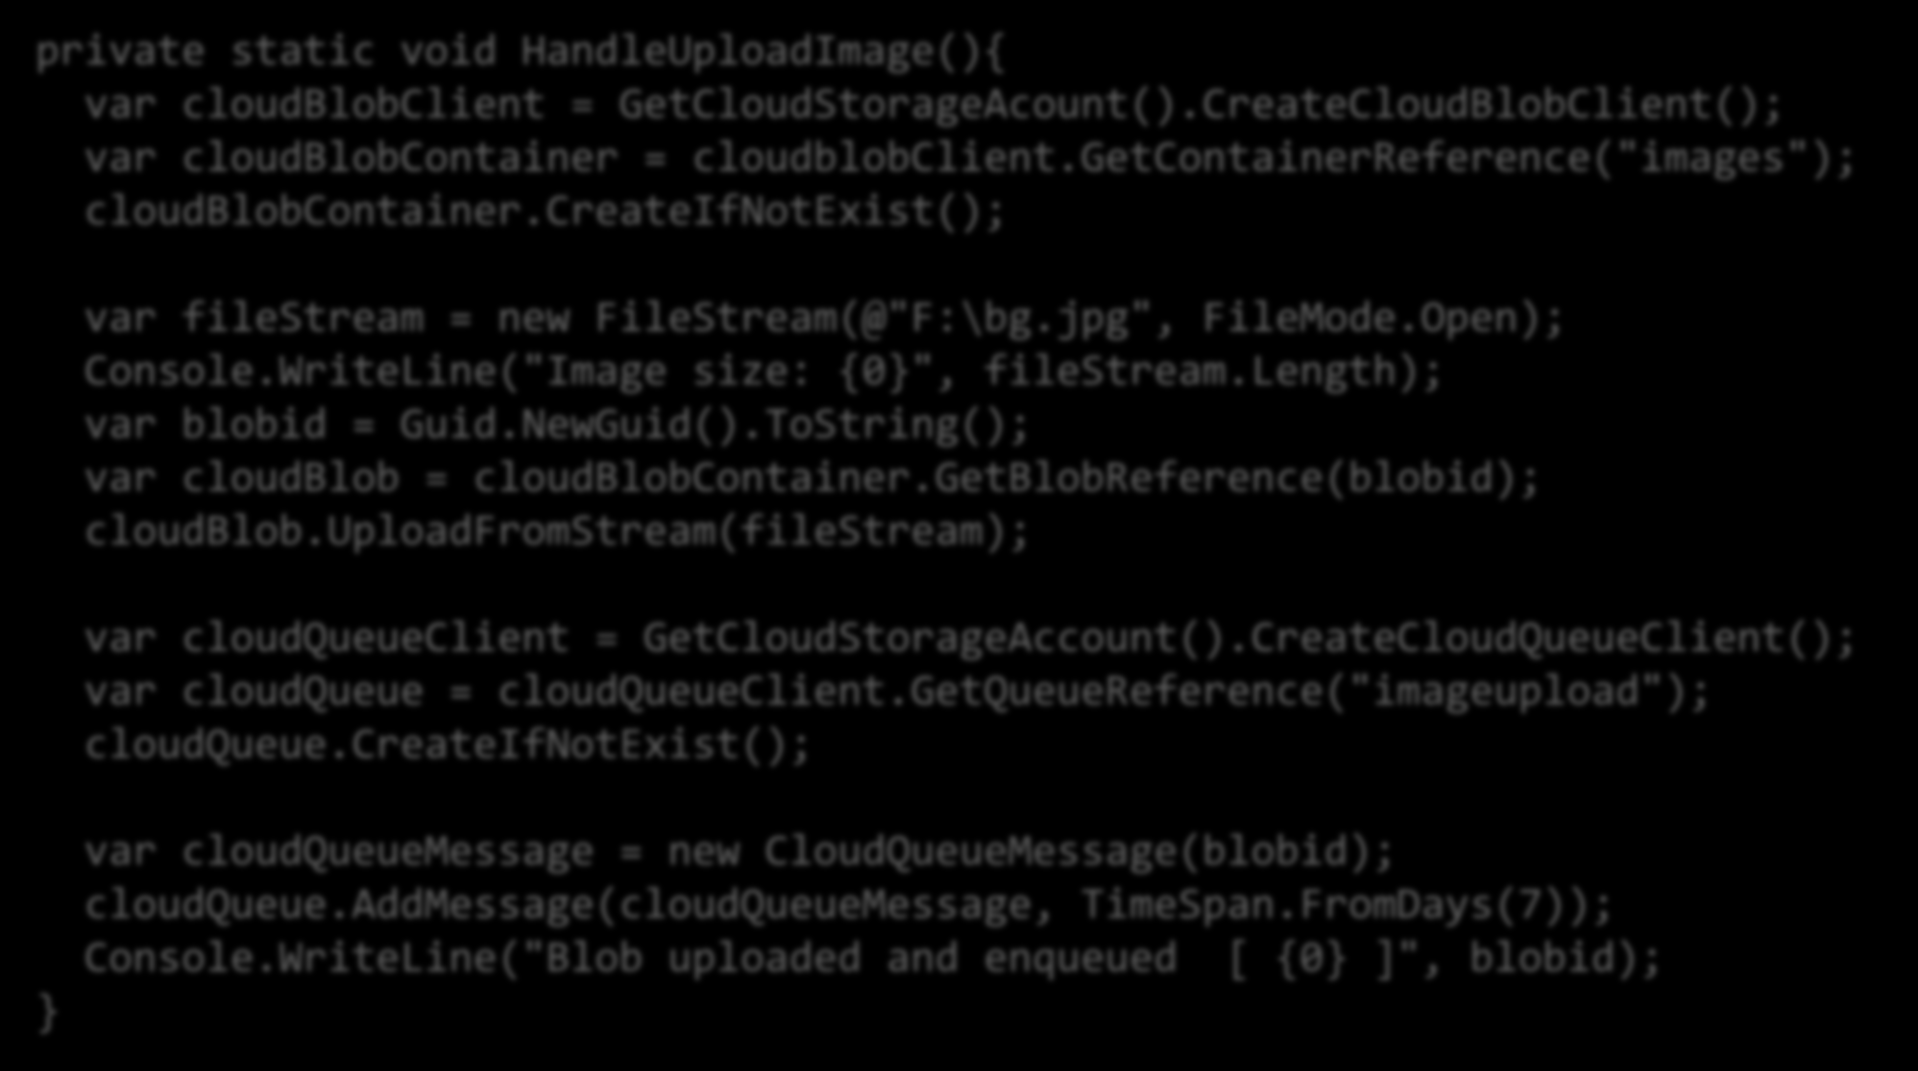 Manipular mensagens cuja dimensão exceda os 64 KB private static void HandleUploadImage(){ var cloudblobclient = GetCloudStorageAcount().